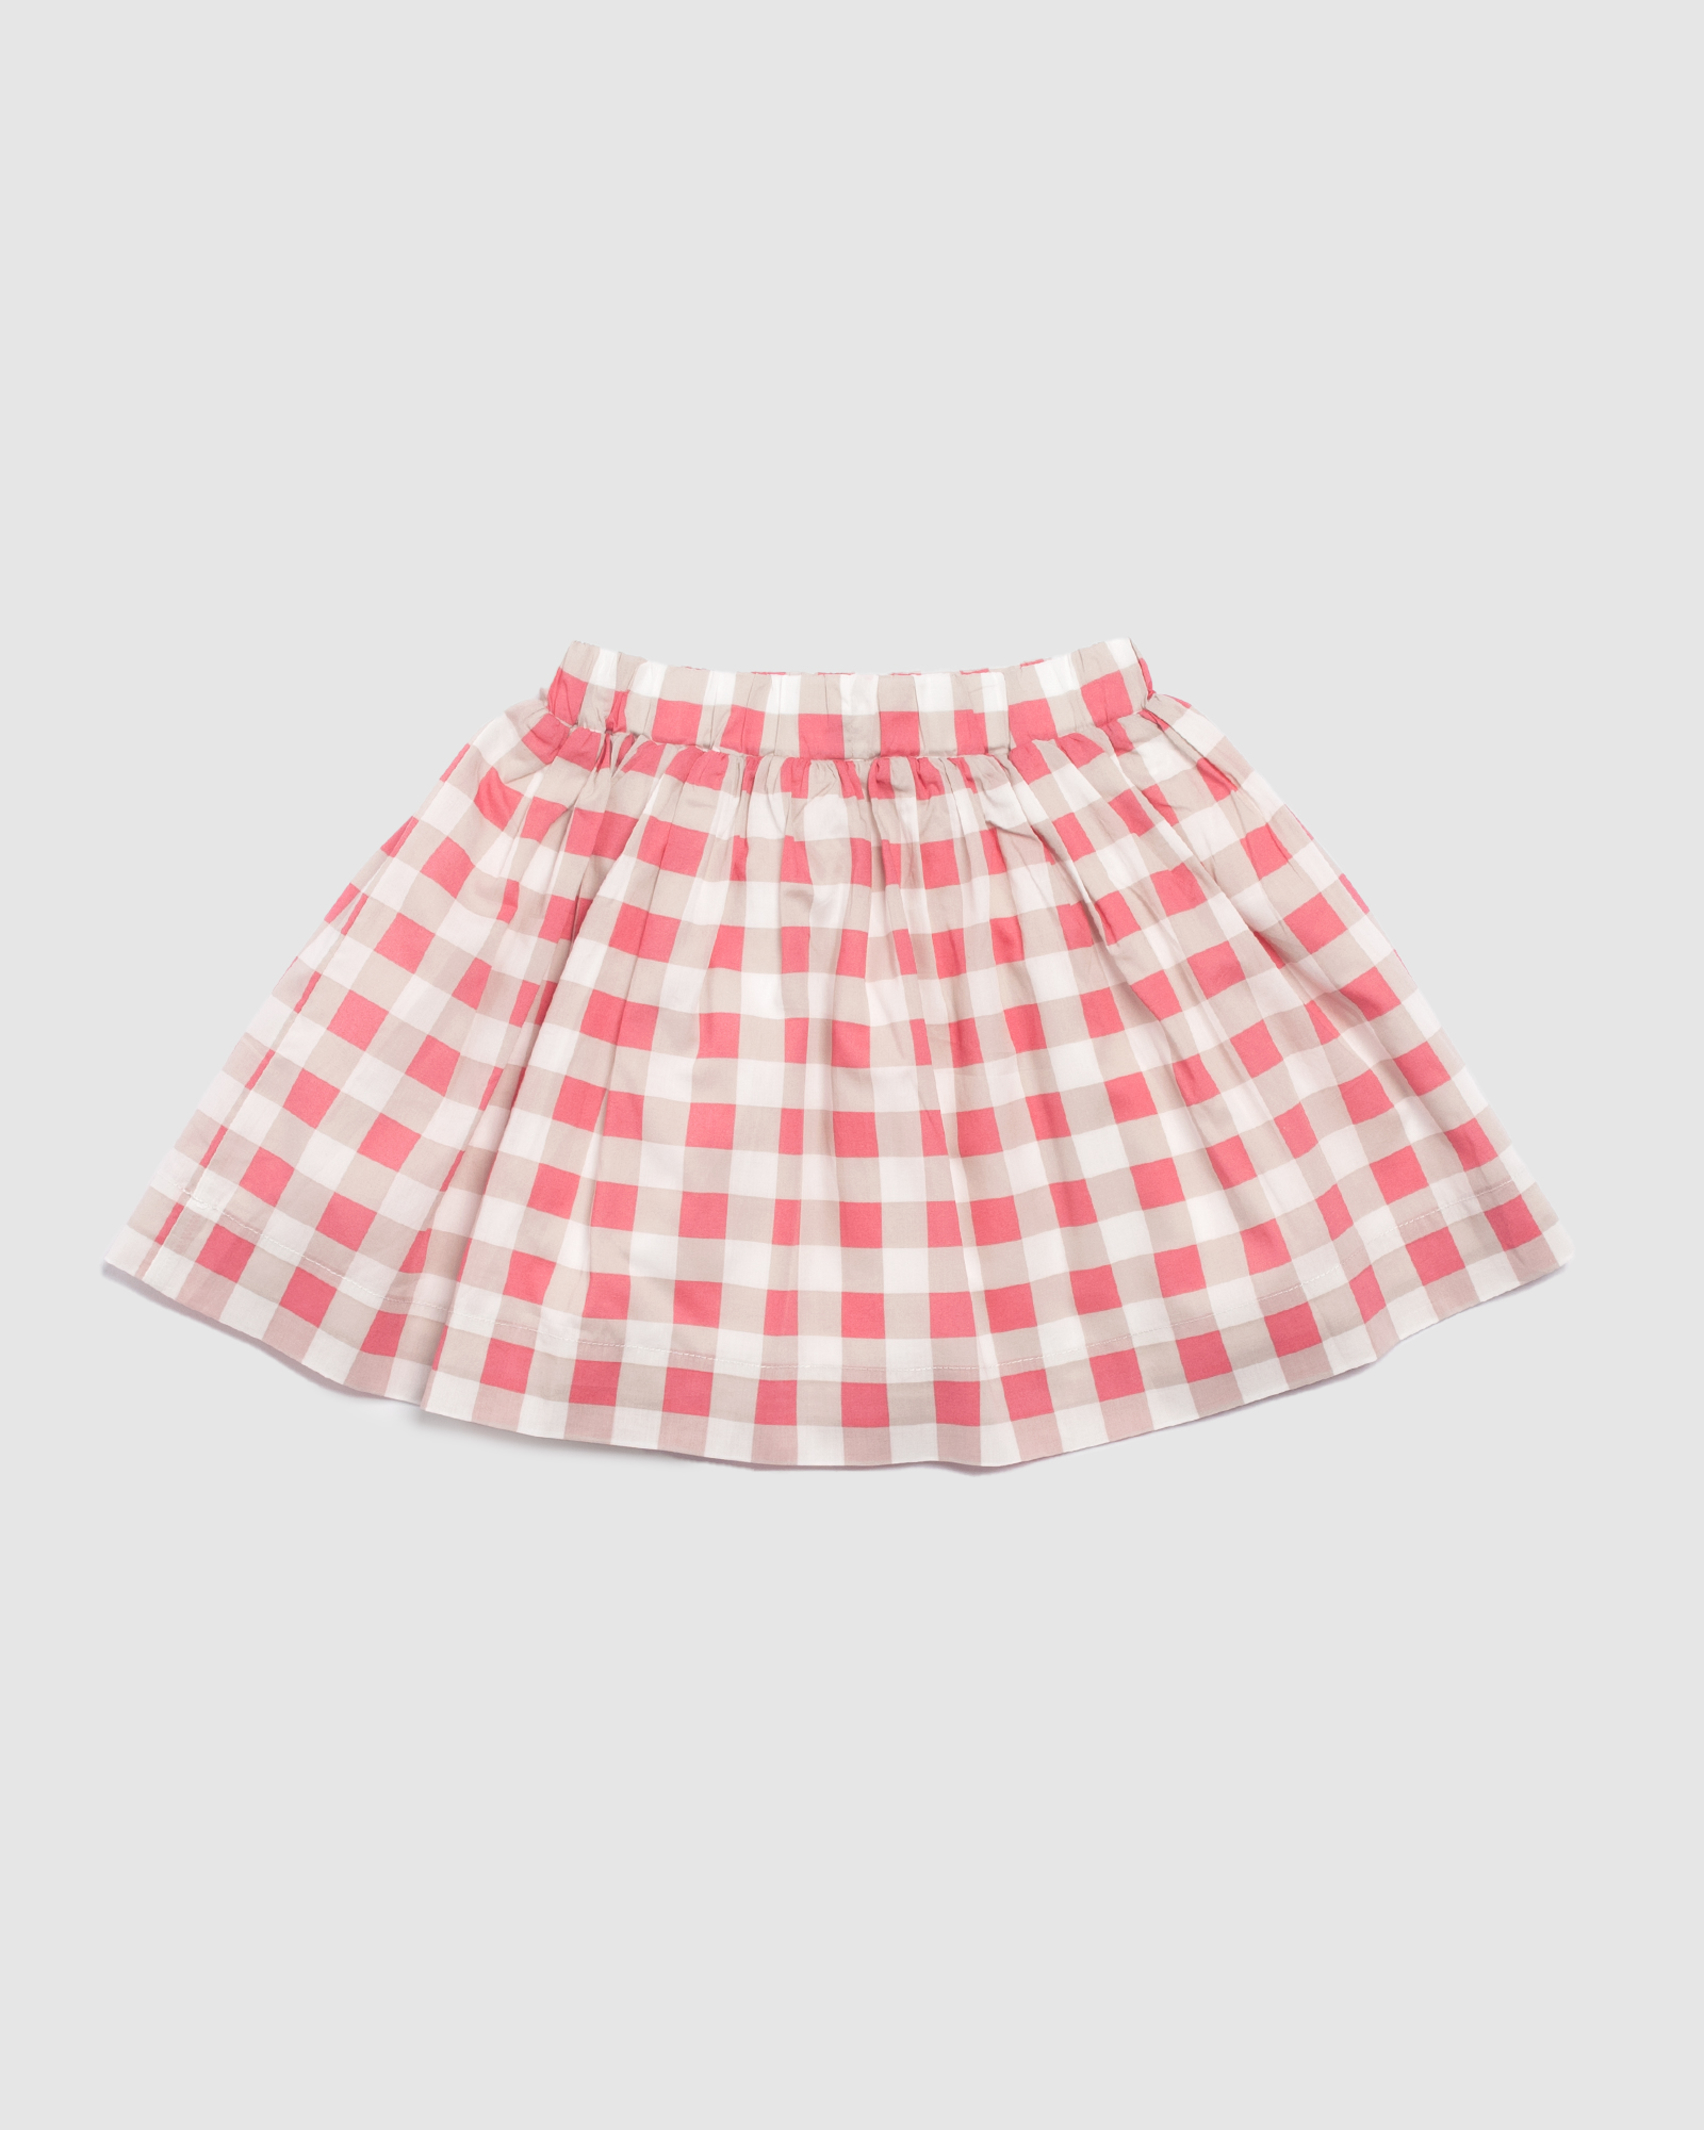 Cora Check Cotton Skirt in MULTI CHECK